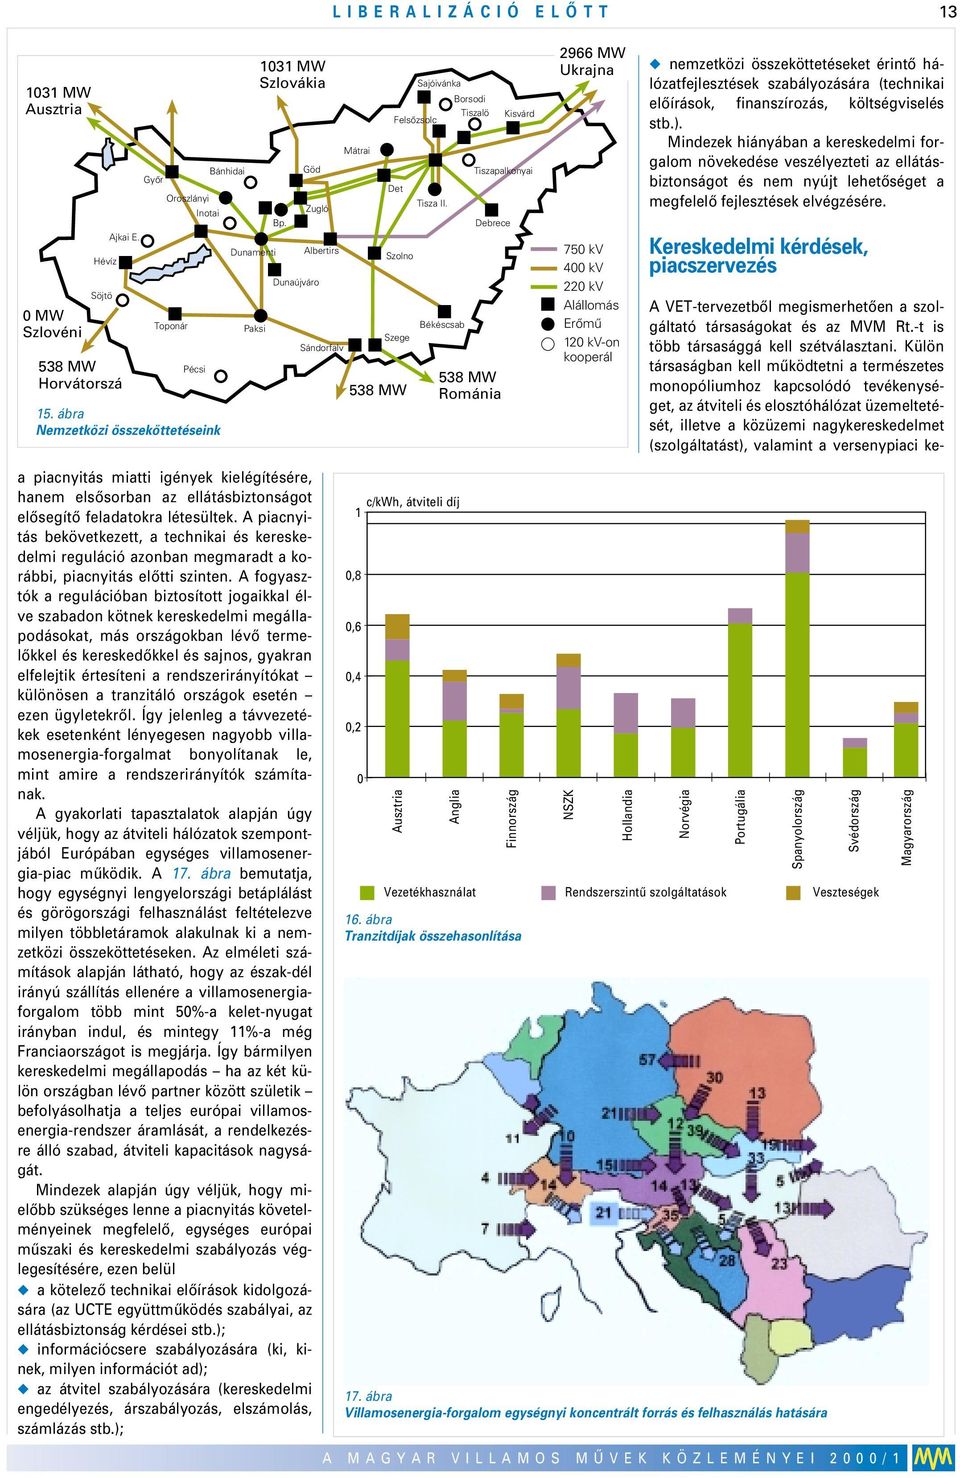 Békéscsab Borsodi Tiszalö Kisvárd Tiszapalkonyai Debrece 538 MW Románia 2966 MW Ukrajna 75 kv 4 kv 22 kv Alállomás Erômû 12 kv-on kooperál u nemzetközi összeköttetéseket érintô hálózatfejlesztések